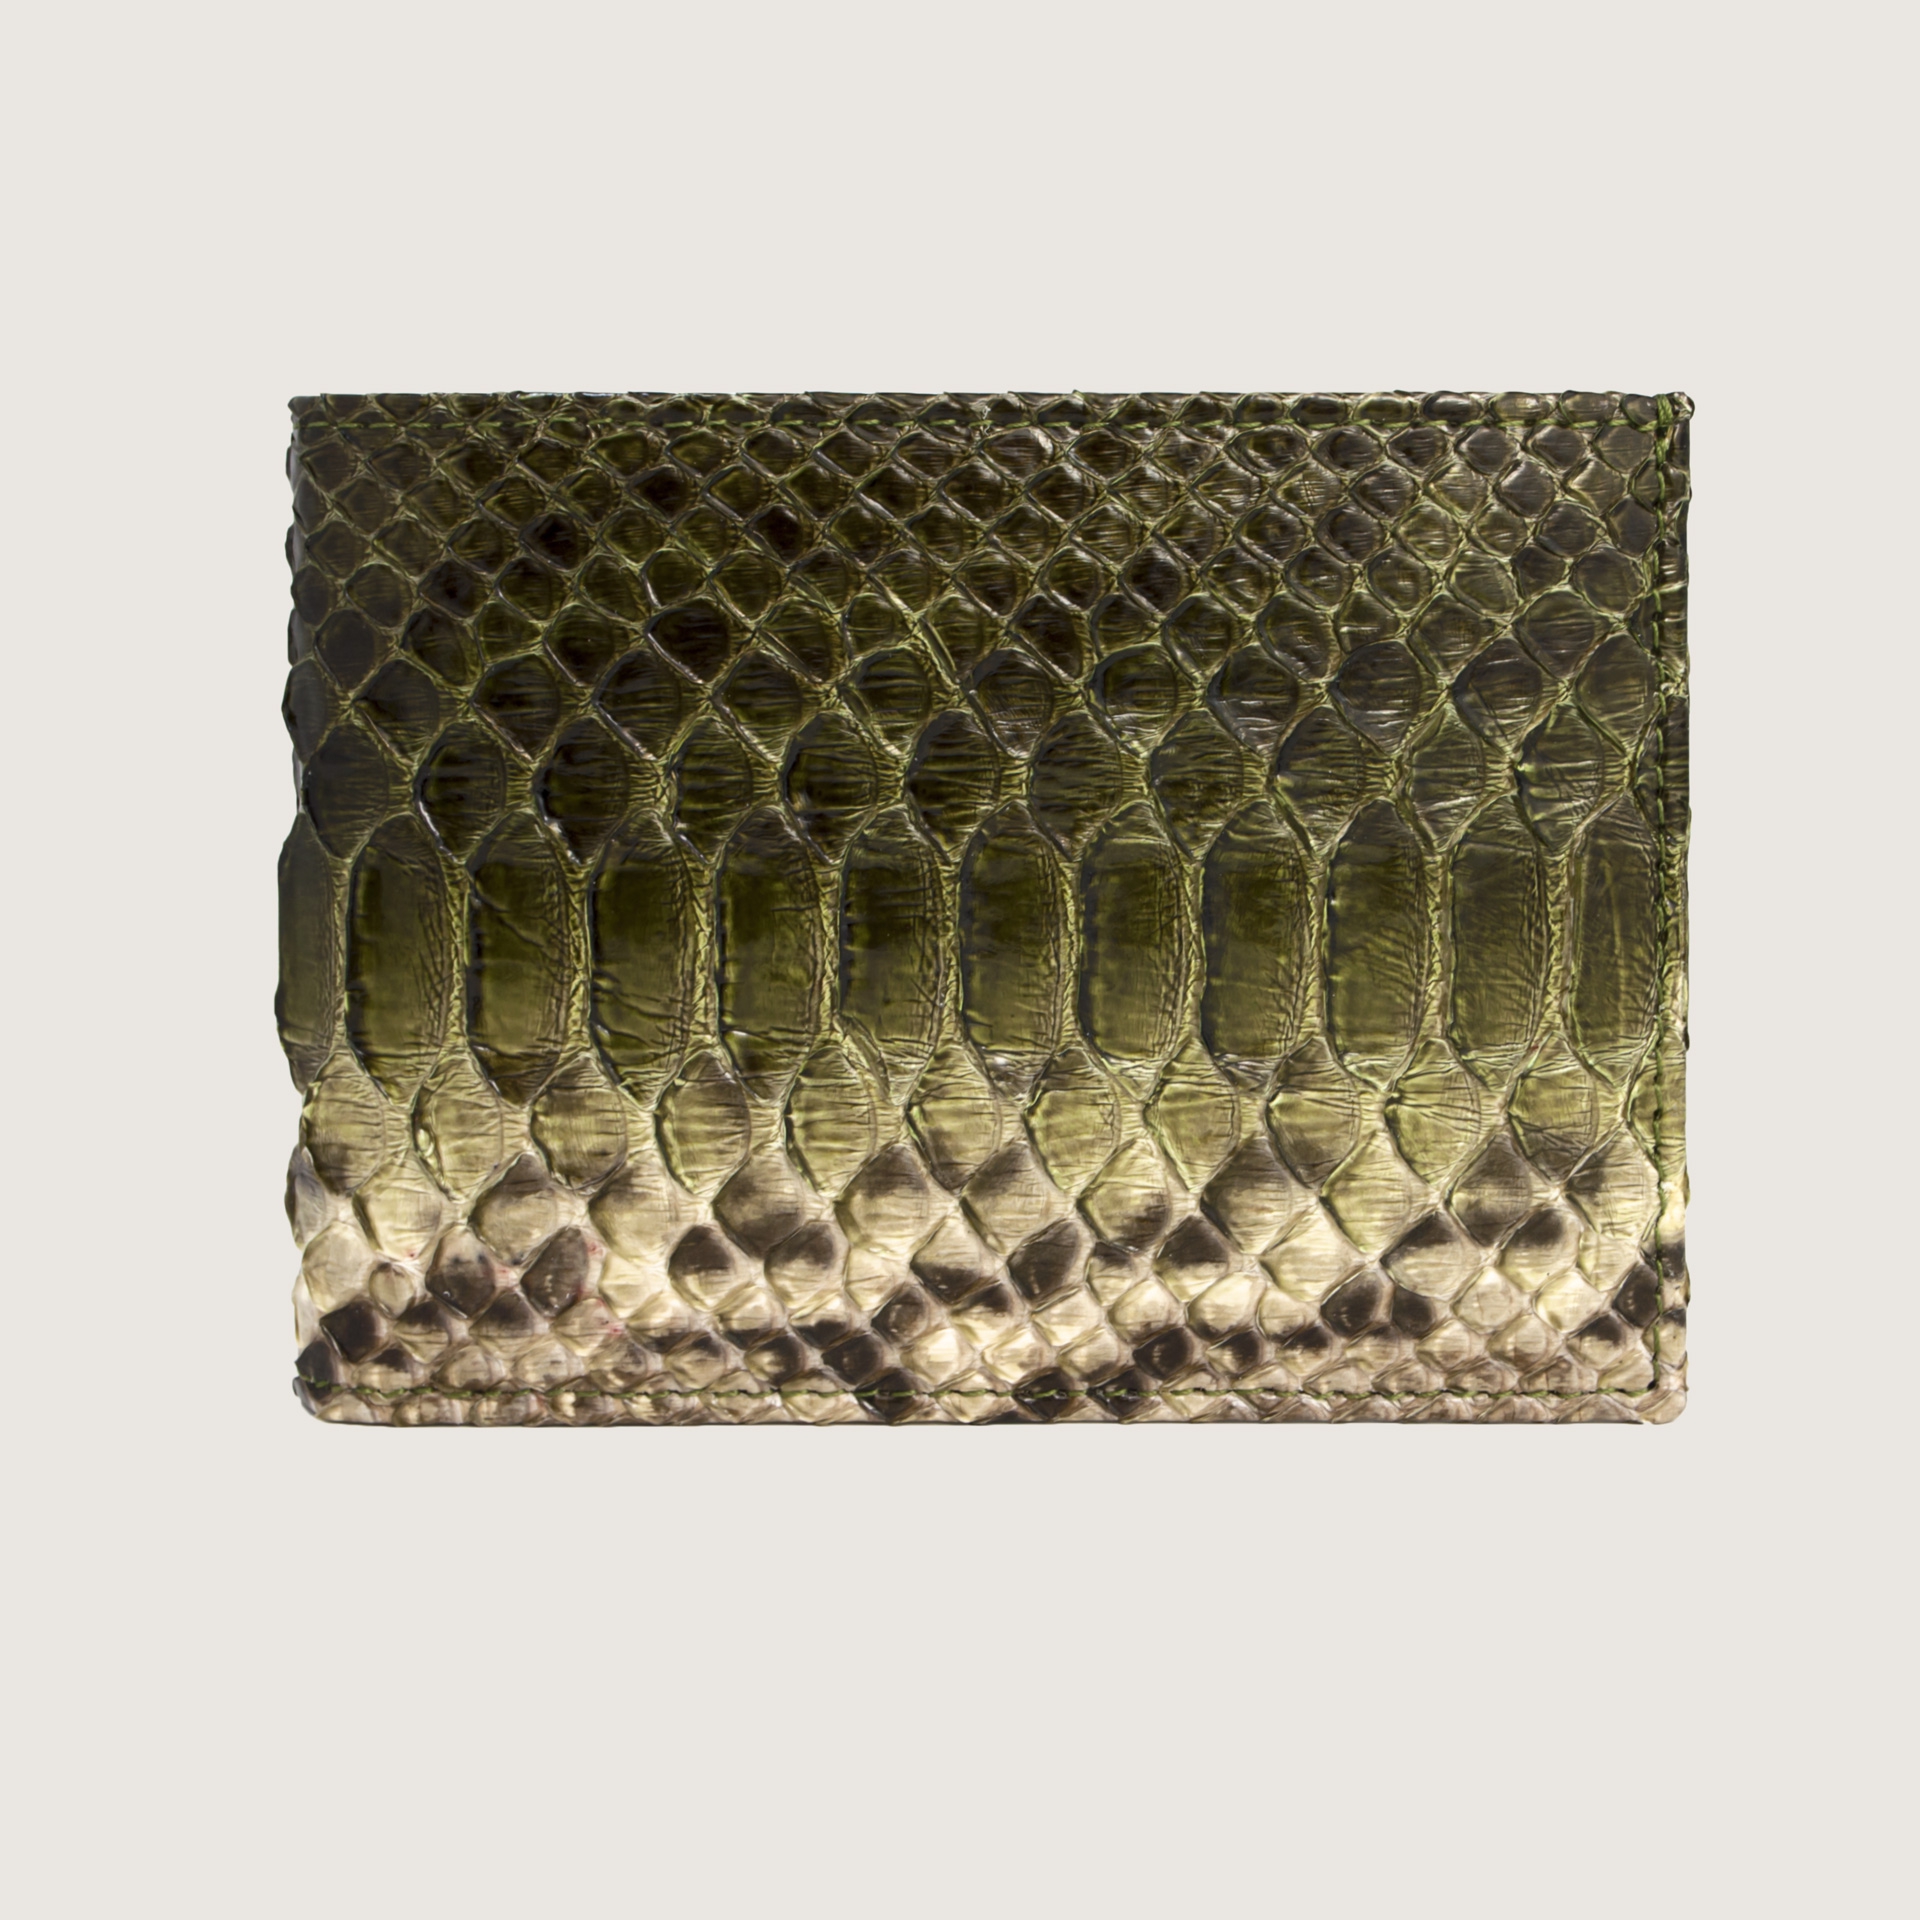 Handgefertigte Herrenbrieftasche aus echter Python, Schlamm mit grünem Farbverlauf